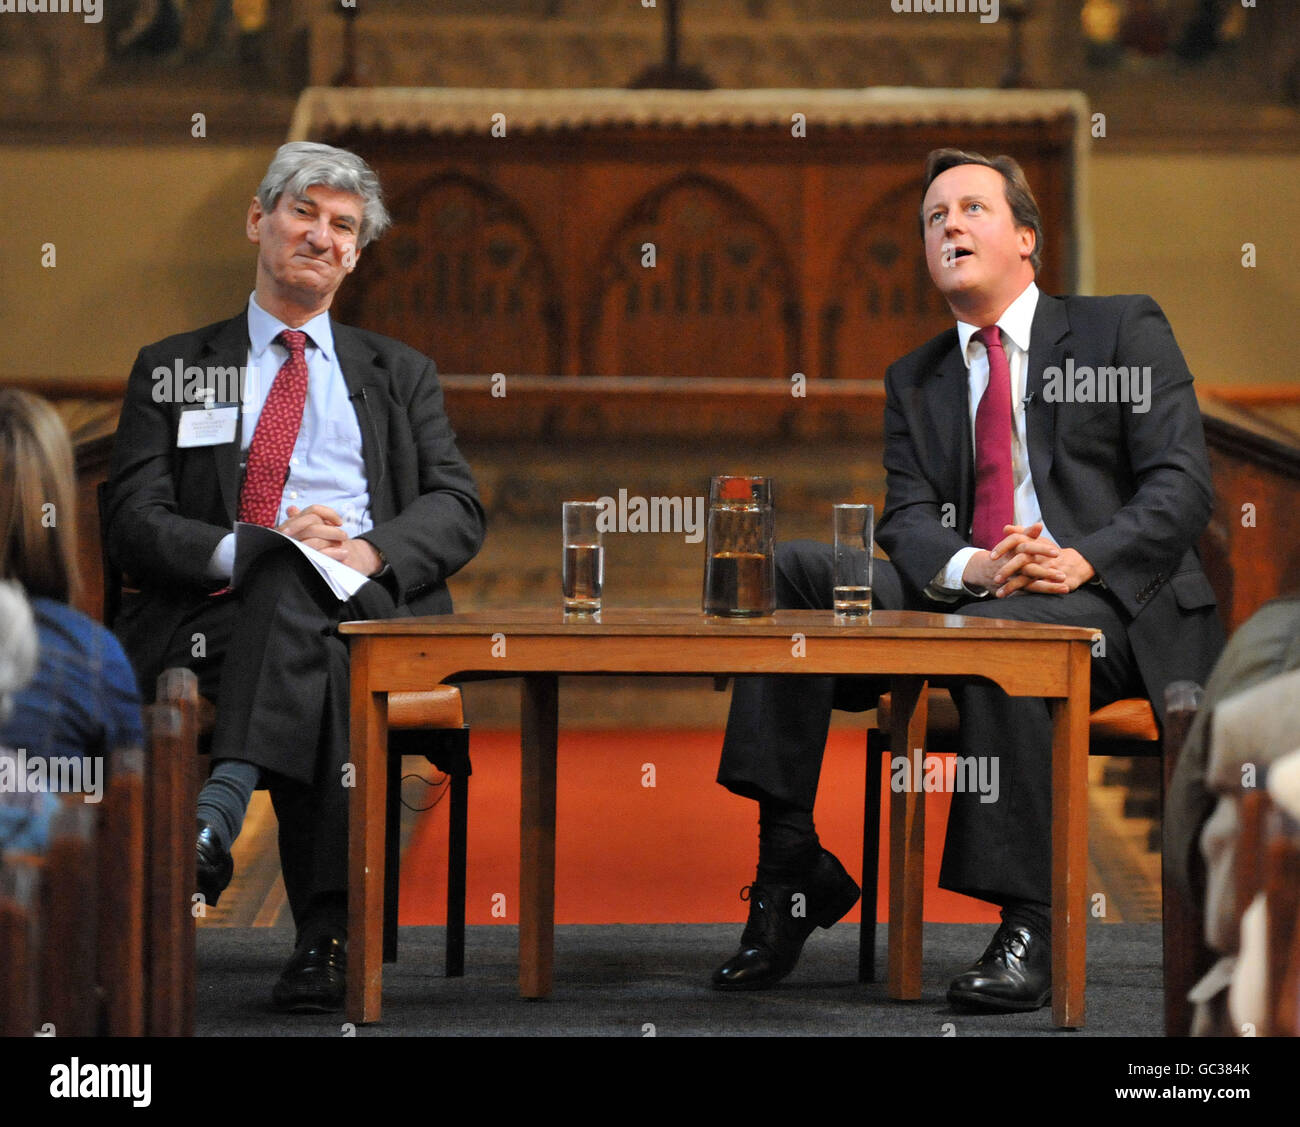 Der konservative Parteivorsitzende David Cameron im Gespräch mit Vernon Bogdanor, Professor für Regierung an der Universität Oxford, im Rahmen des Woodstock Literary Festivals in Oxford. Stockfoto